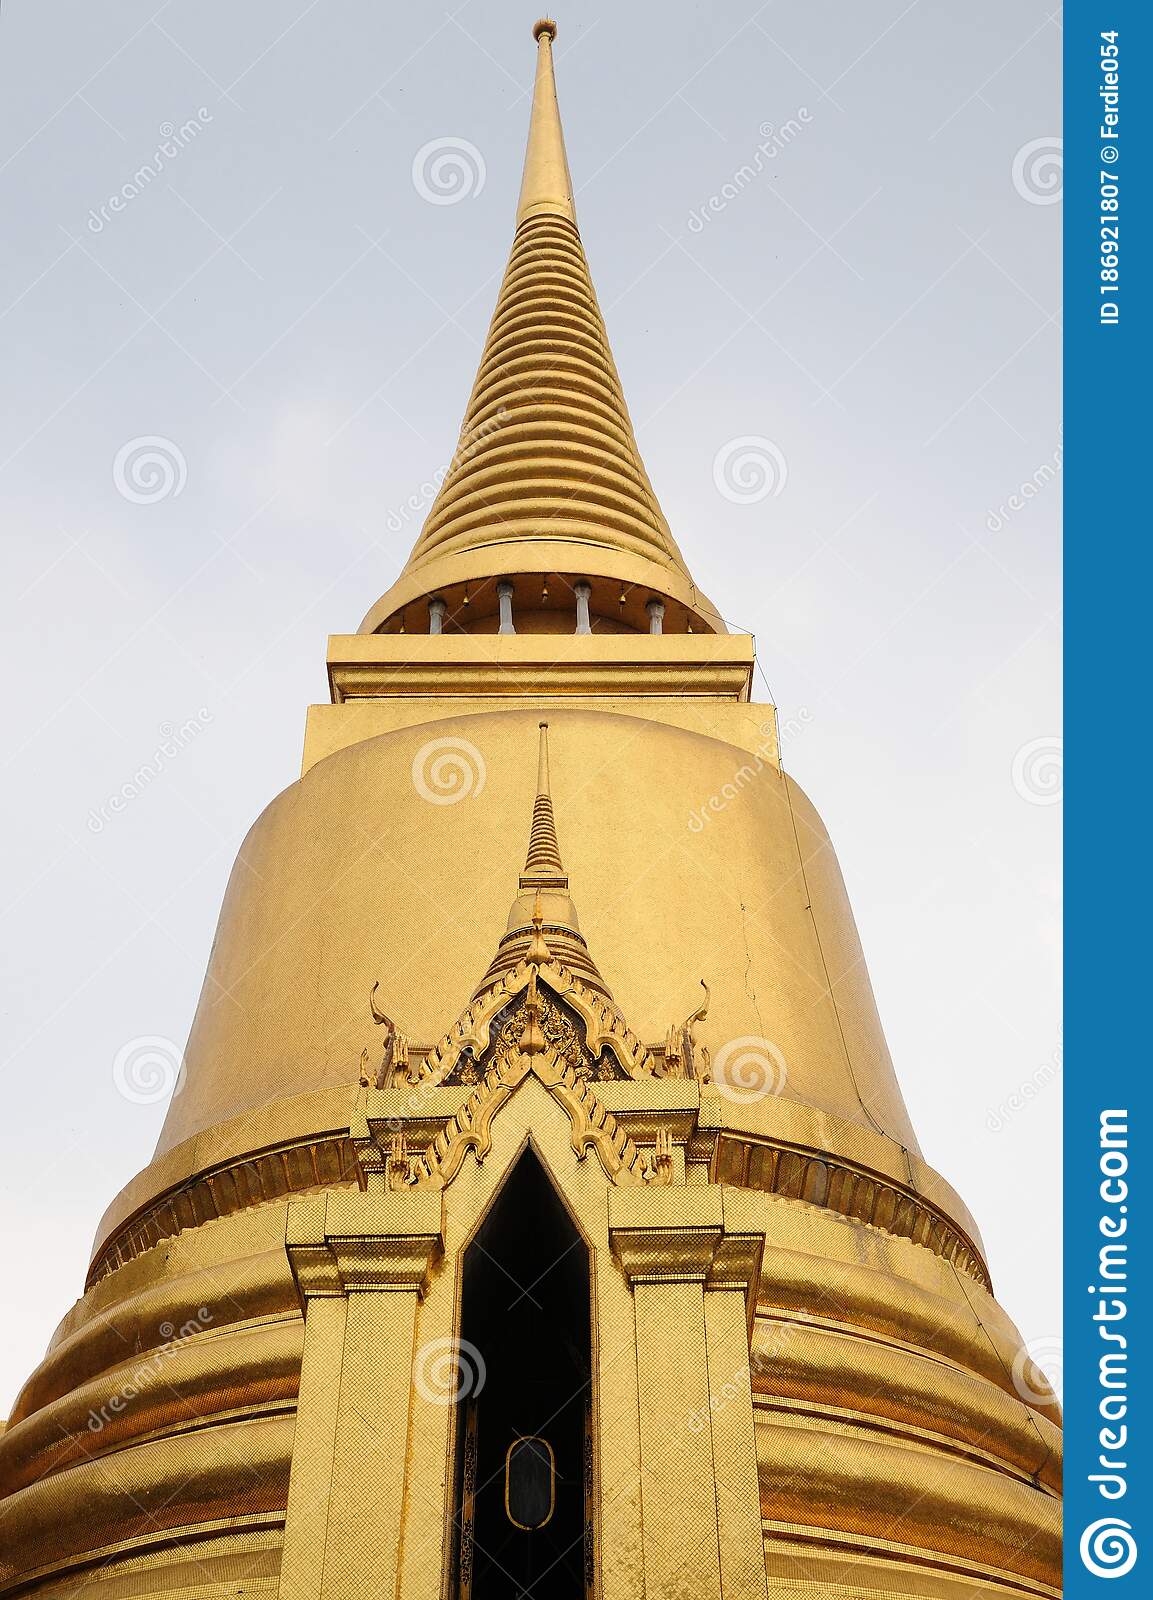 Gambar Pagoda Thailand